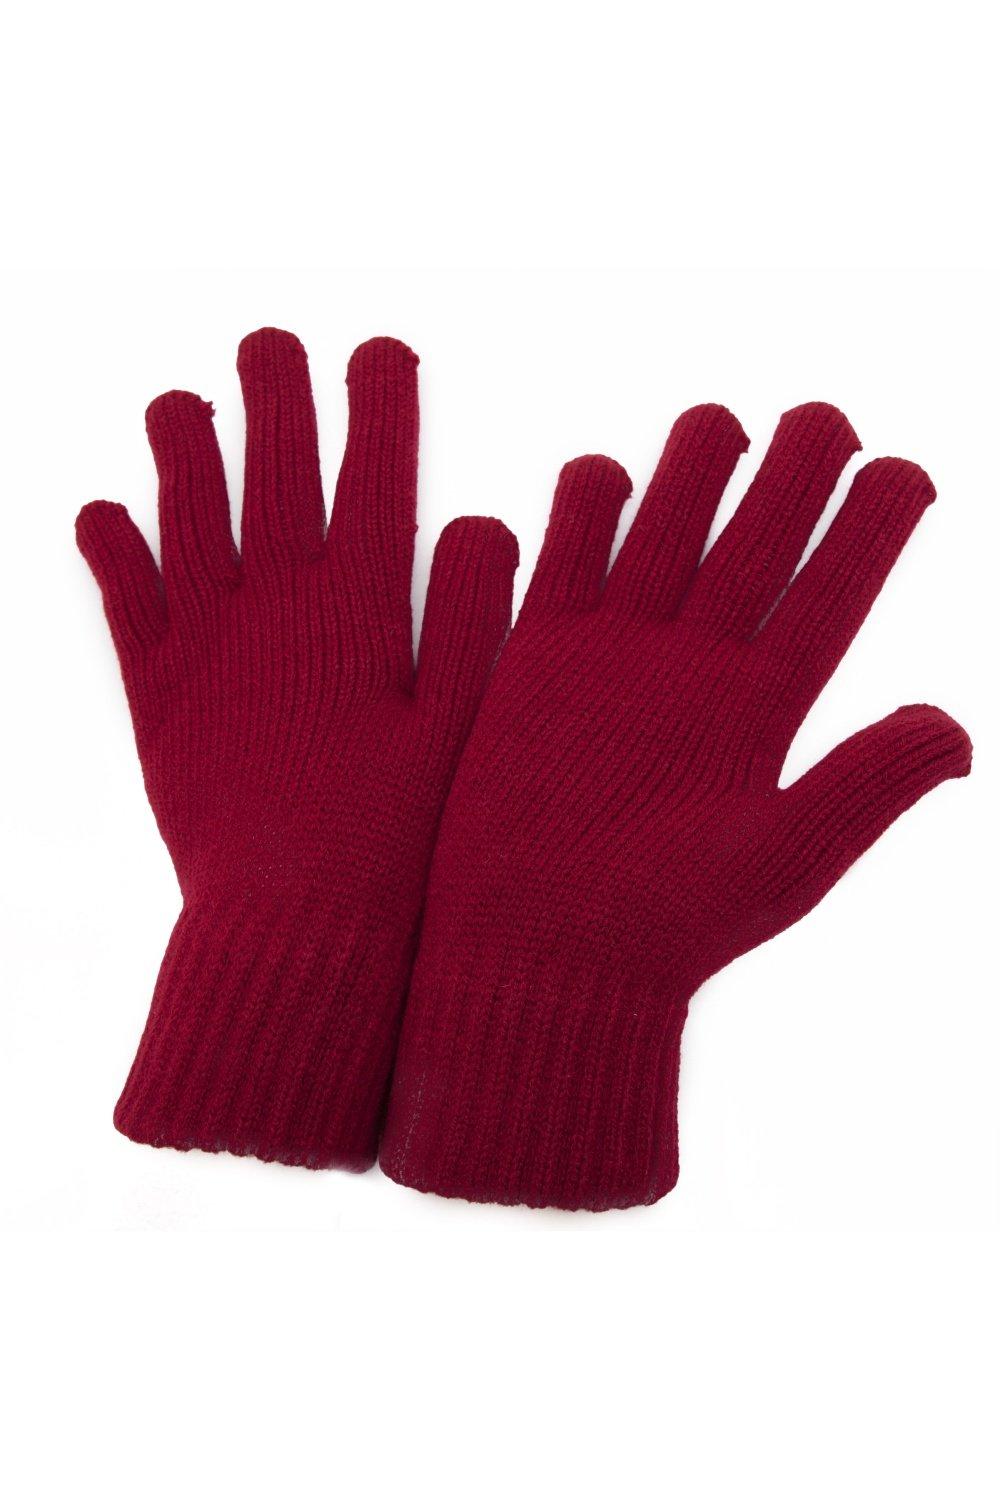 РАСПРОСТРАНЕНИЕ - Зимние перчатки Universal Textiles, красный распродажа термовязаные зимние перчатки universal textiles серый